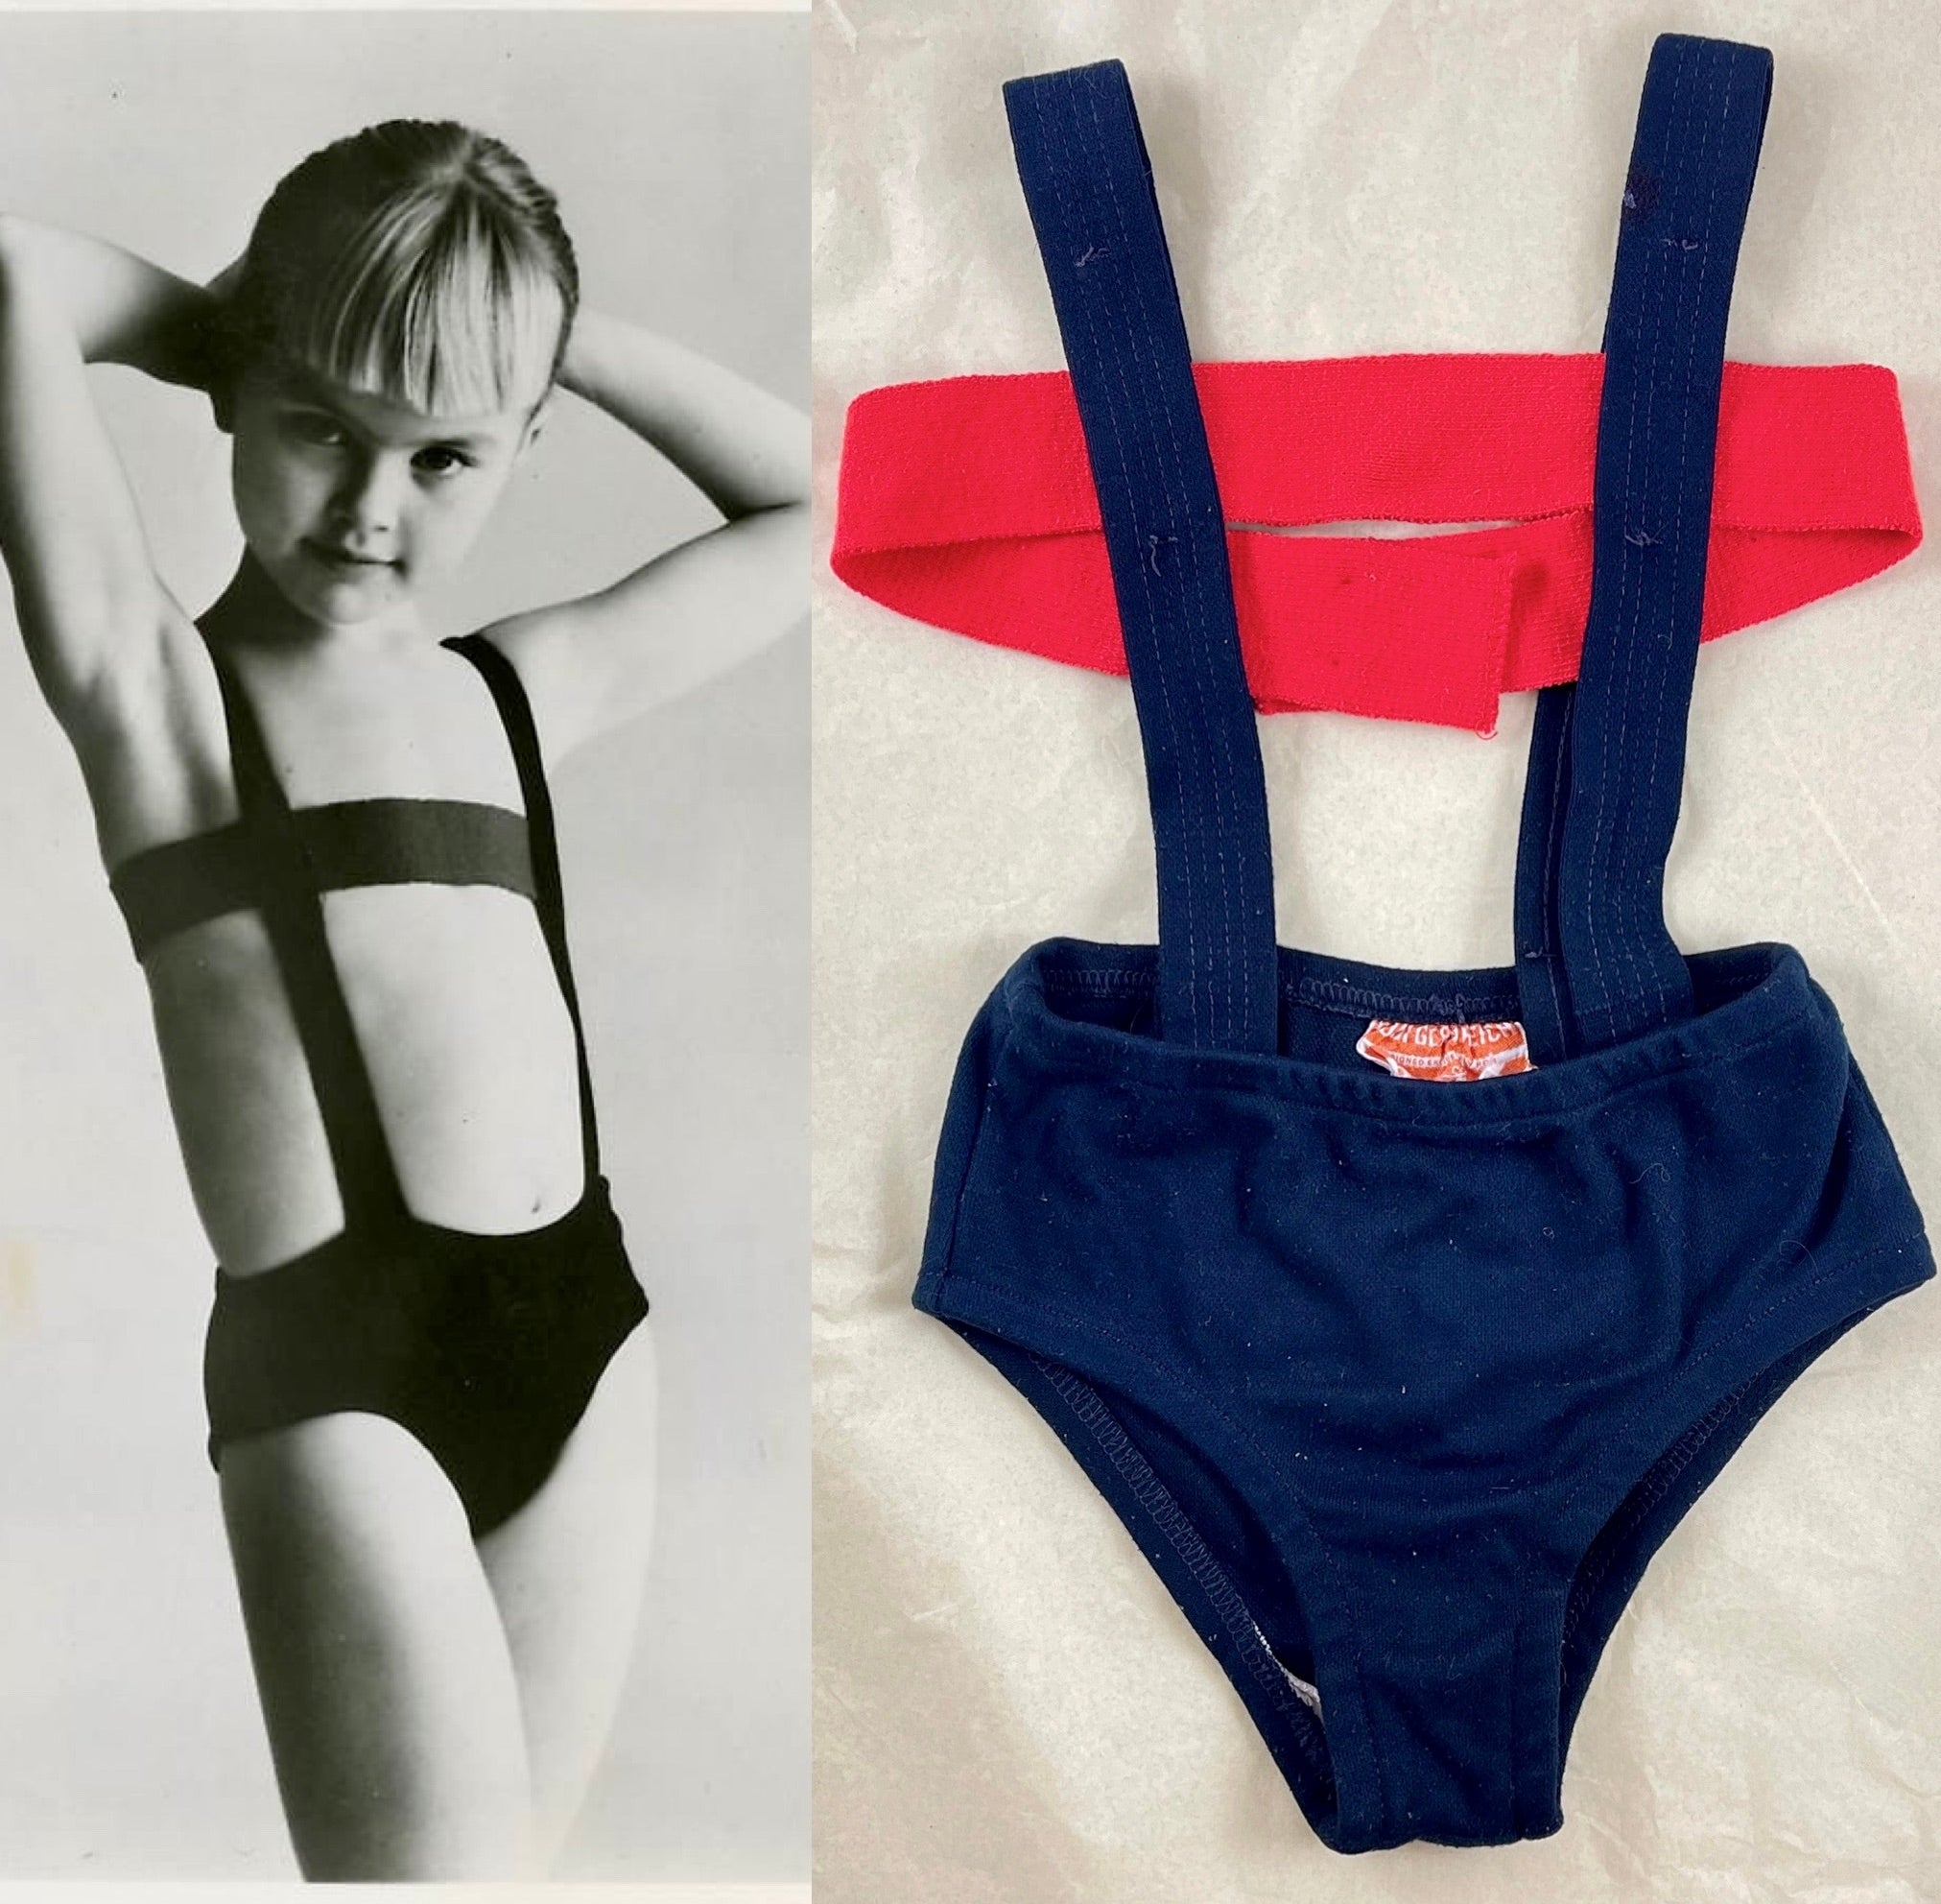 Ein originaler Monokini für Mädchen in Größe 6X mit einem Bandeau-Top, entworfen von Rudi Gernreich, um 1964. 

Rudi Gernreich war ein amerikanischer Designer, der 1922 in Österreich, Wien, geboren wurde und 1985 in Los Angeles starb.

Gernreichs